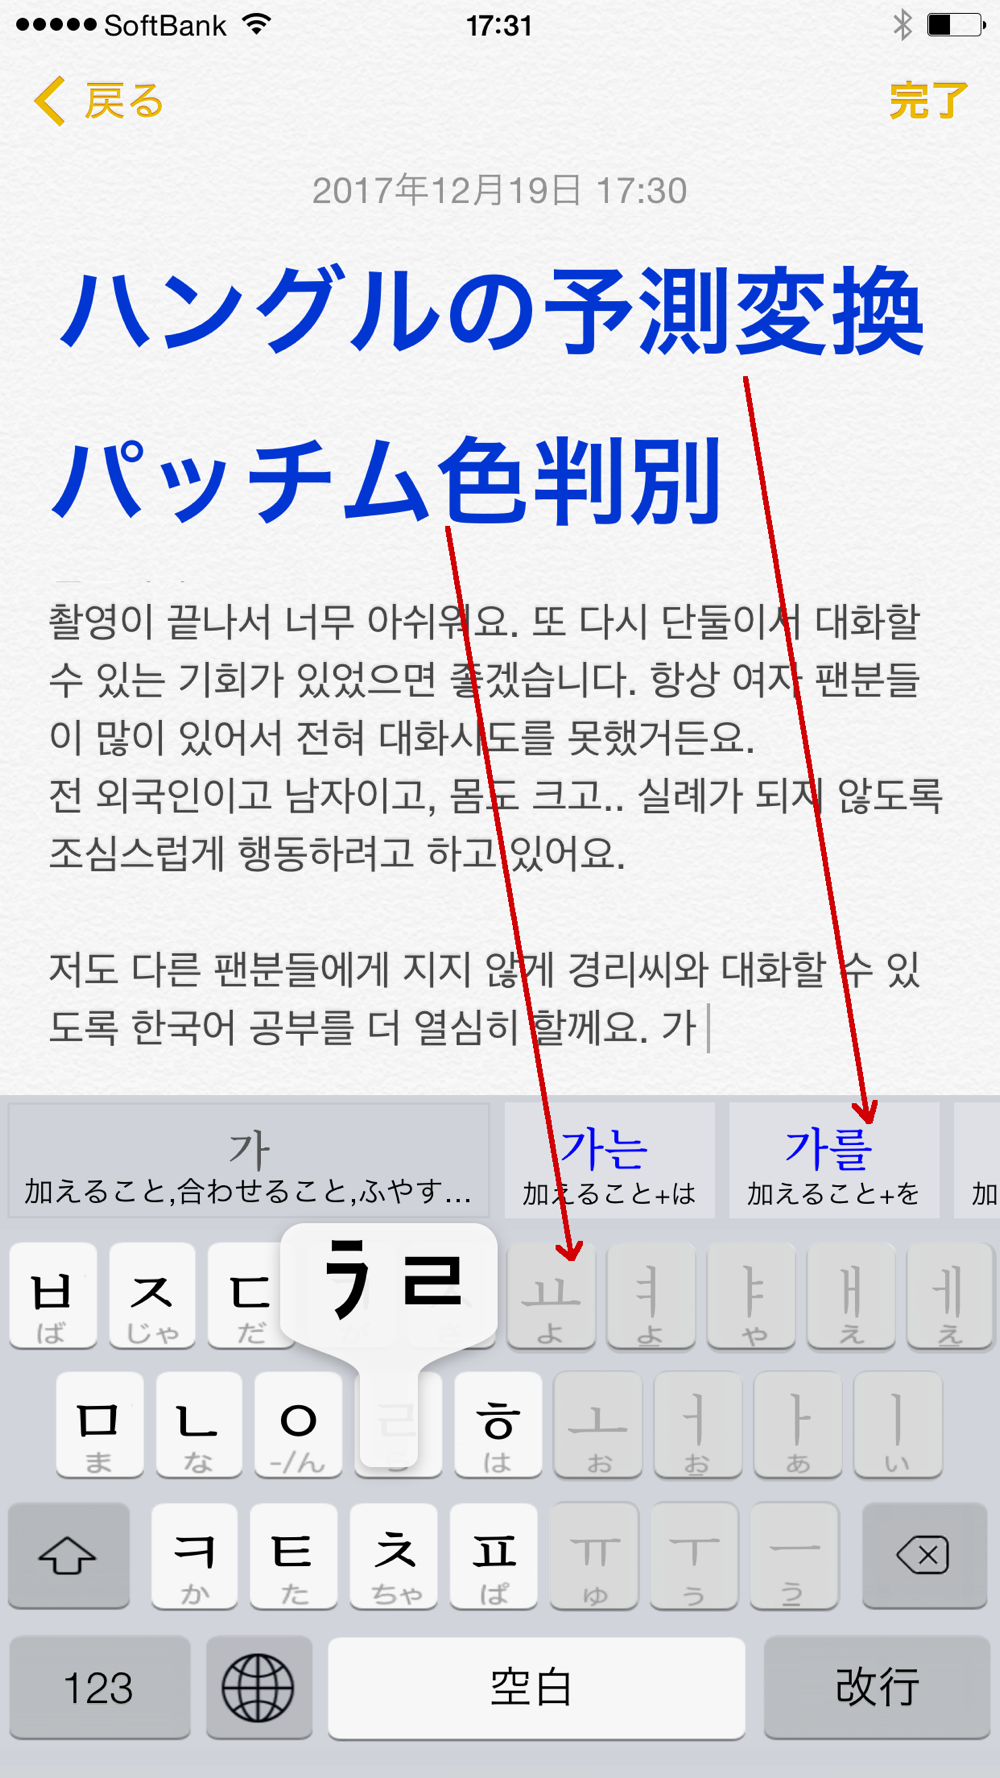 ハングル 辞書付き韓国語キーボード Download App For Iphone Steprimo Com